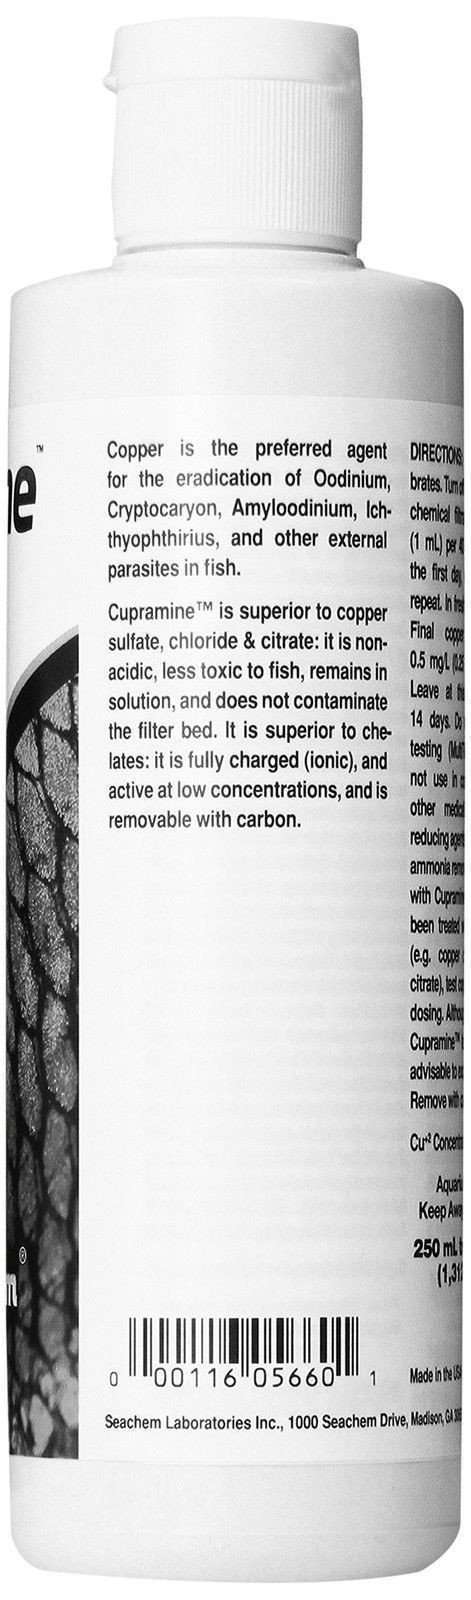 Seachem Cupramine Copper 250Ml - $17.95